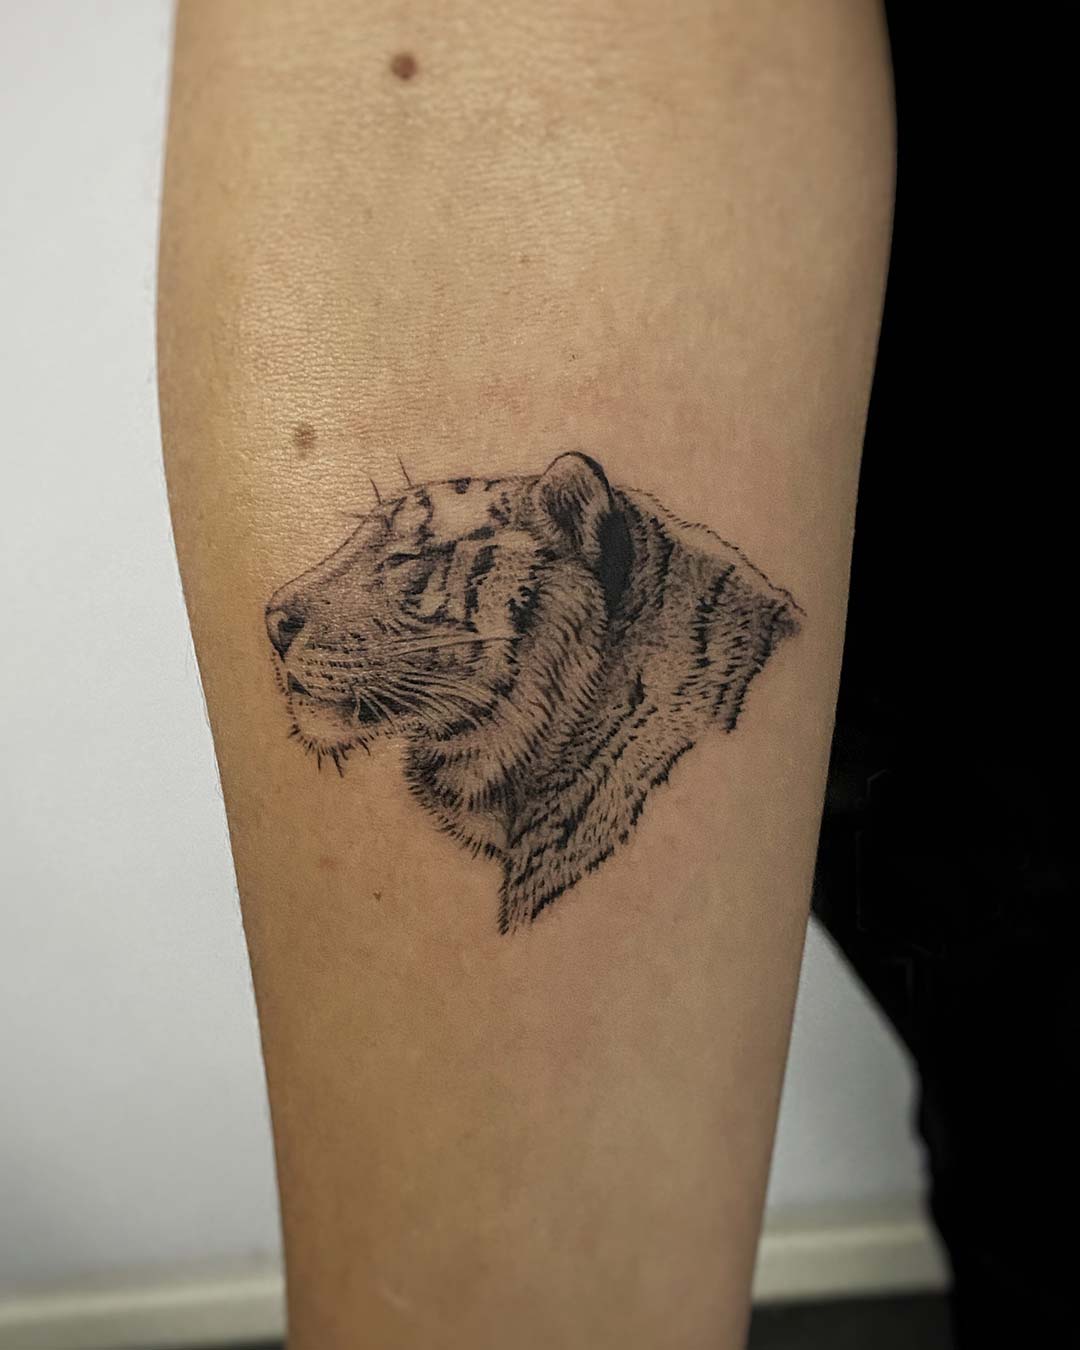 Tatuajes microrealismo cabeza de tigre - Santi H